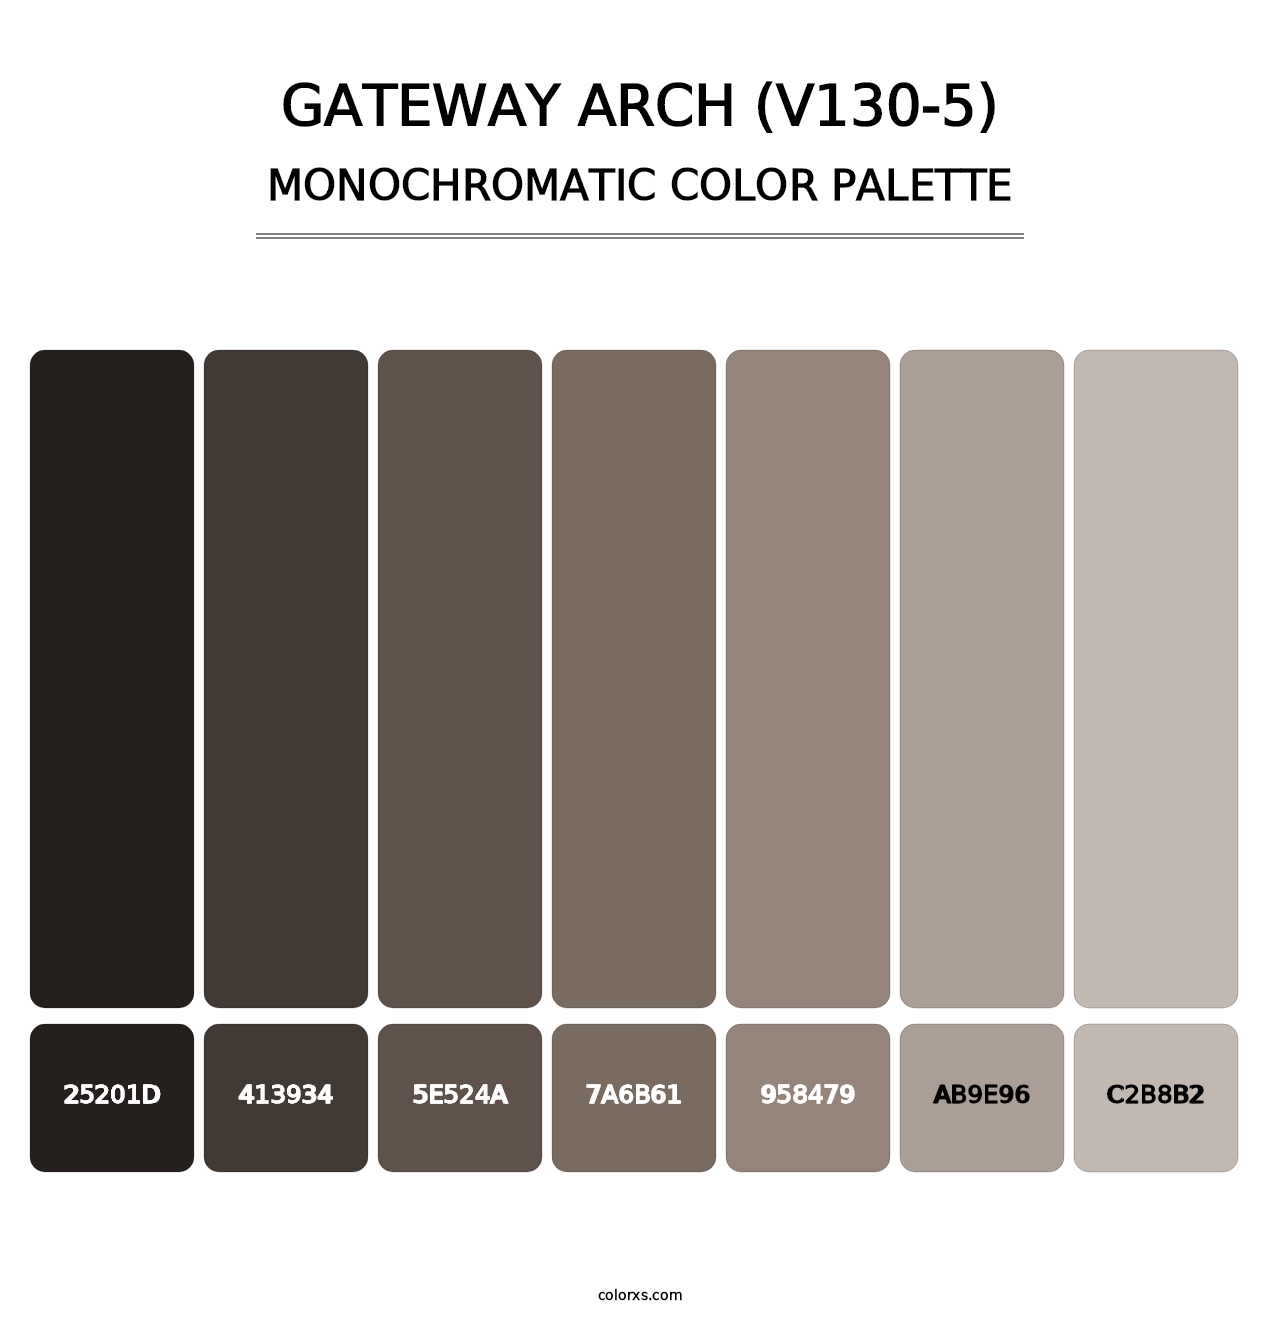 Gateway Arch (V130-5) - Monochromatic Color Palette